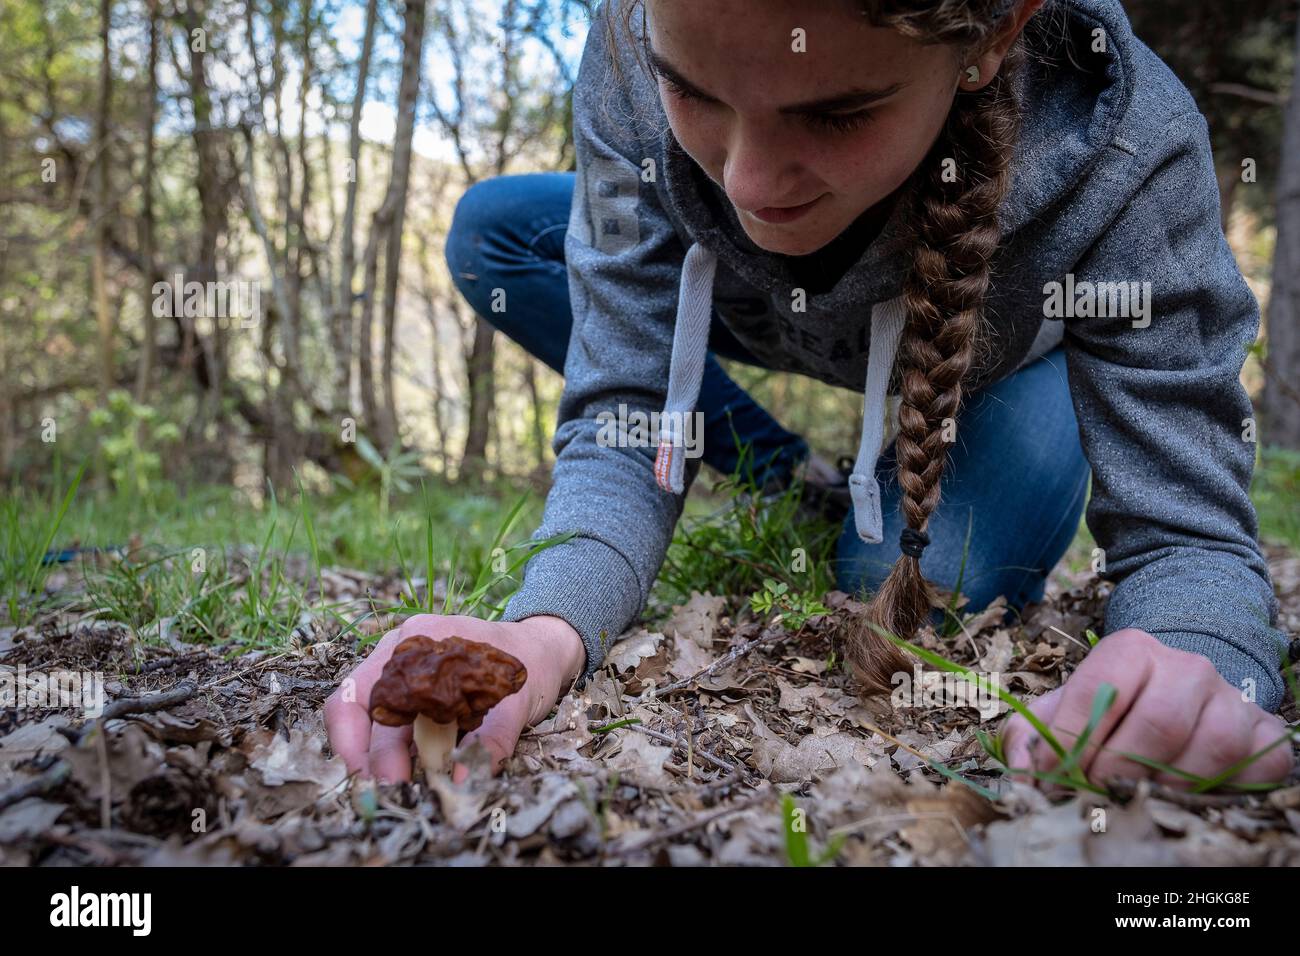 Woman collecting wild mushrooms, Murga de Prat, Gyromitra, in Alt Pirineu Natural Park, Lleida, Catalonia, Spain Stock Photo